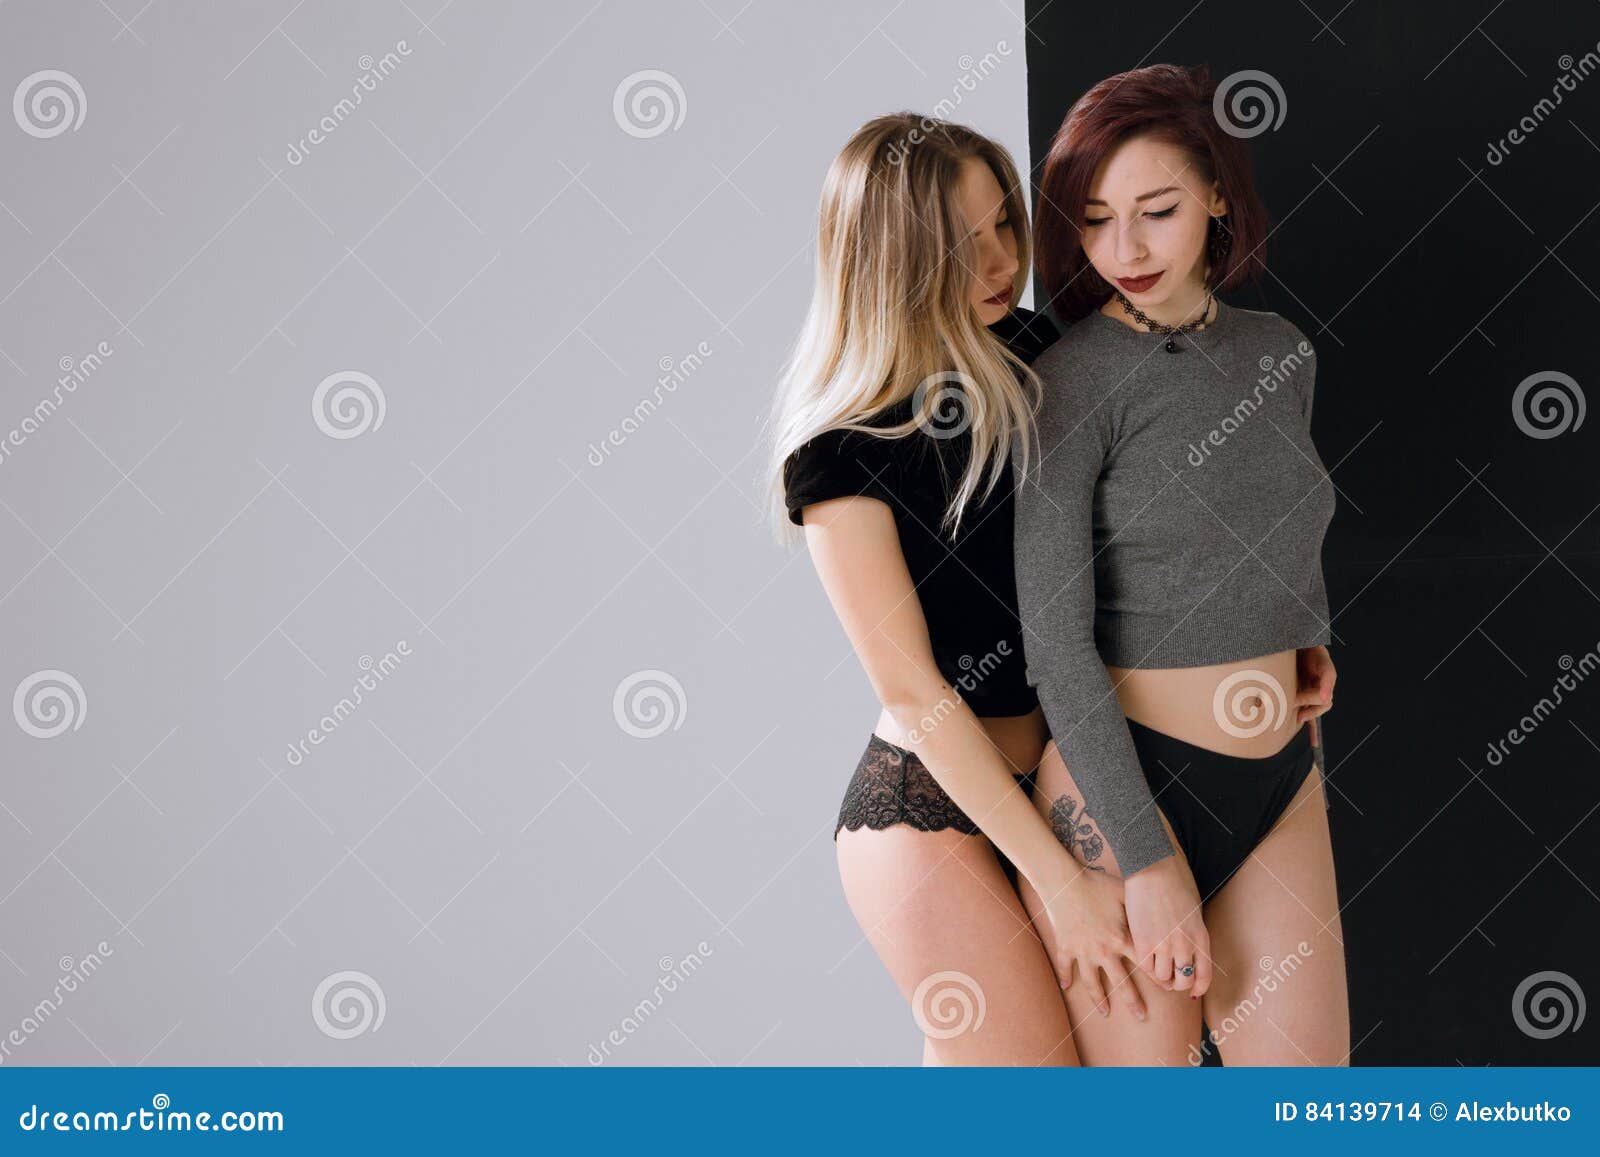 foto kin Fonkeling Twee Mooie Meisjes in Lingerie Die Zich Op Een Witte Achtergrond Bevinden  Stock Foto - Image of erotisch, kaukasisch: 84139714